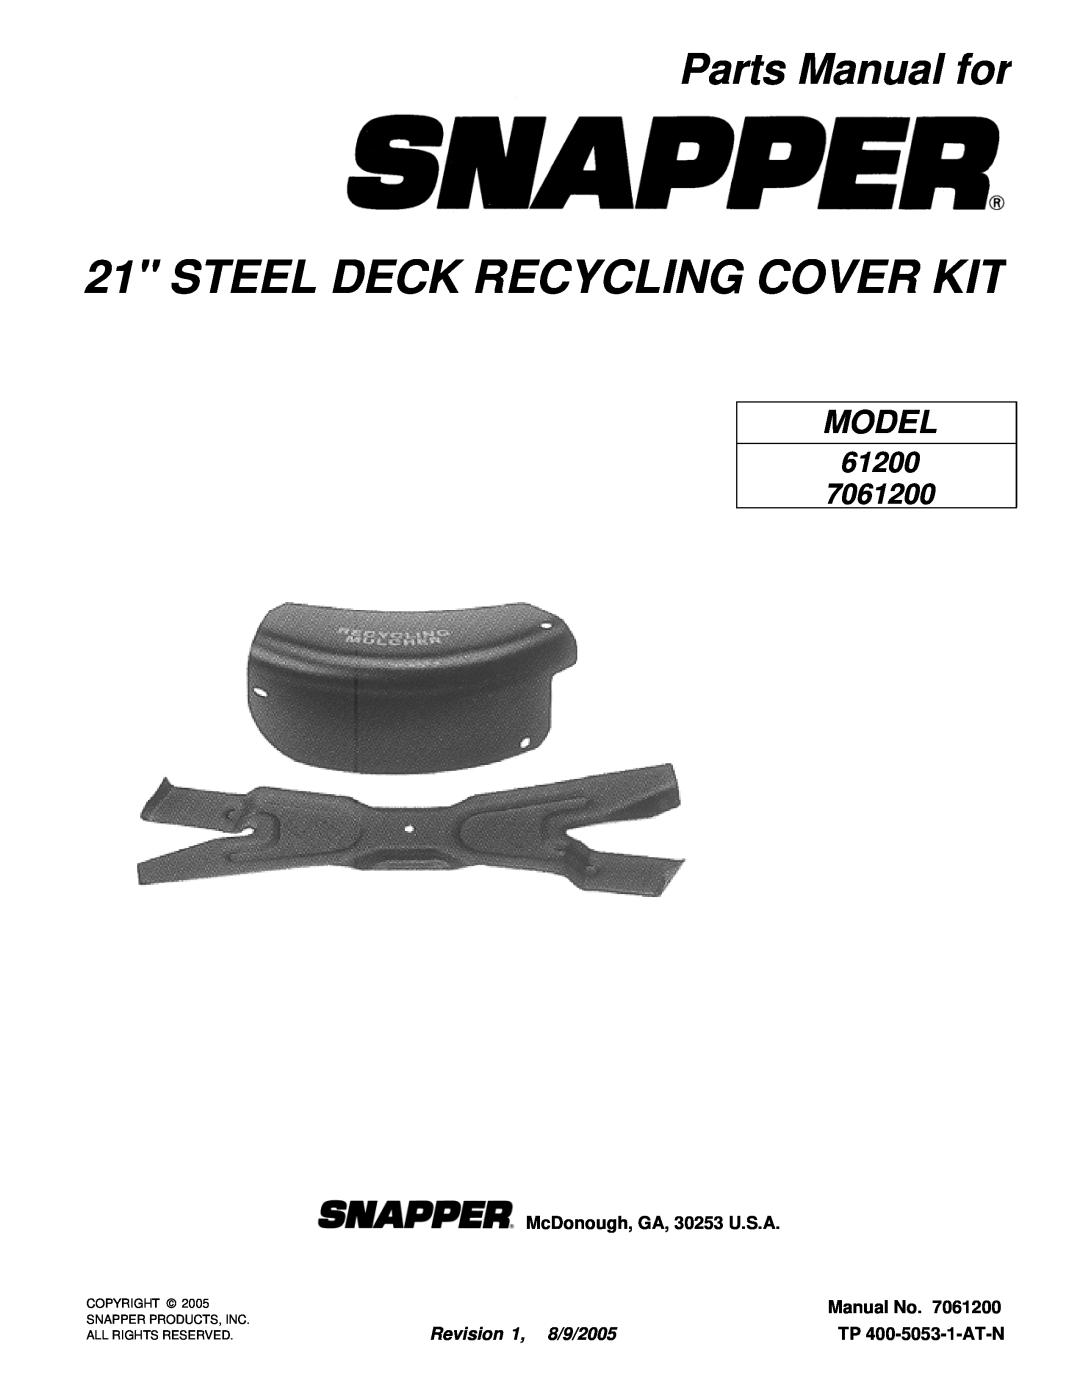 Snapper 61200 manual Parts Manual for, McDonough, GA, 30253 U.S.A, Manual No, Revision 1, 8/9/2005, TP 400-5053-1-AT-N 